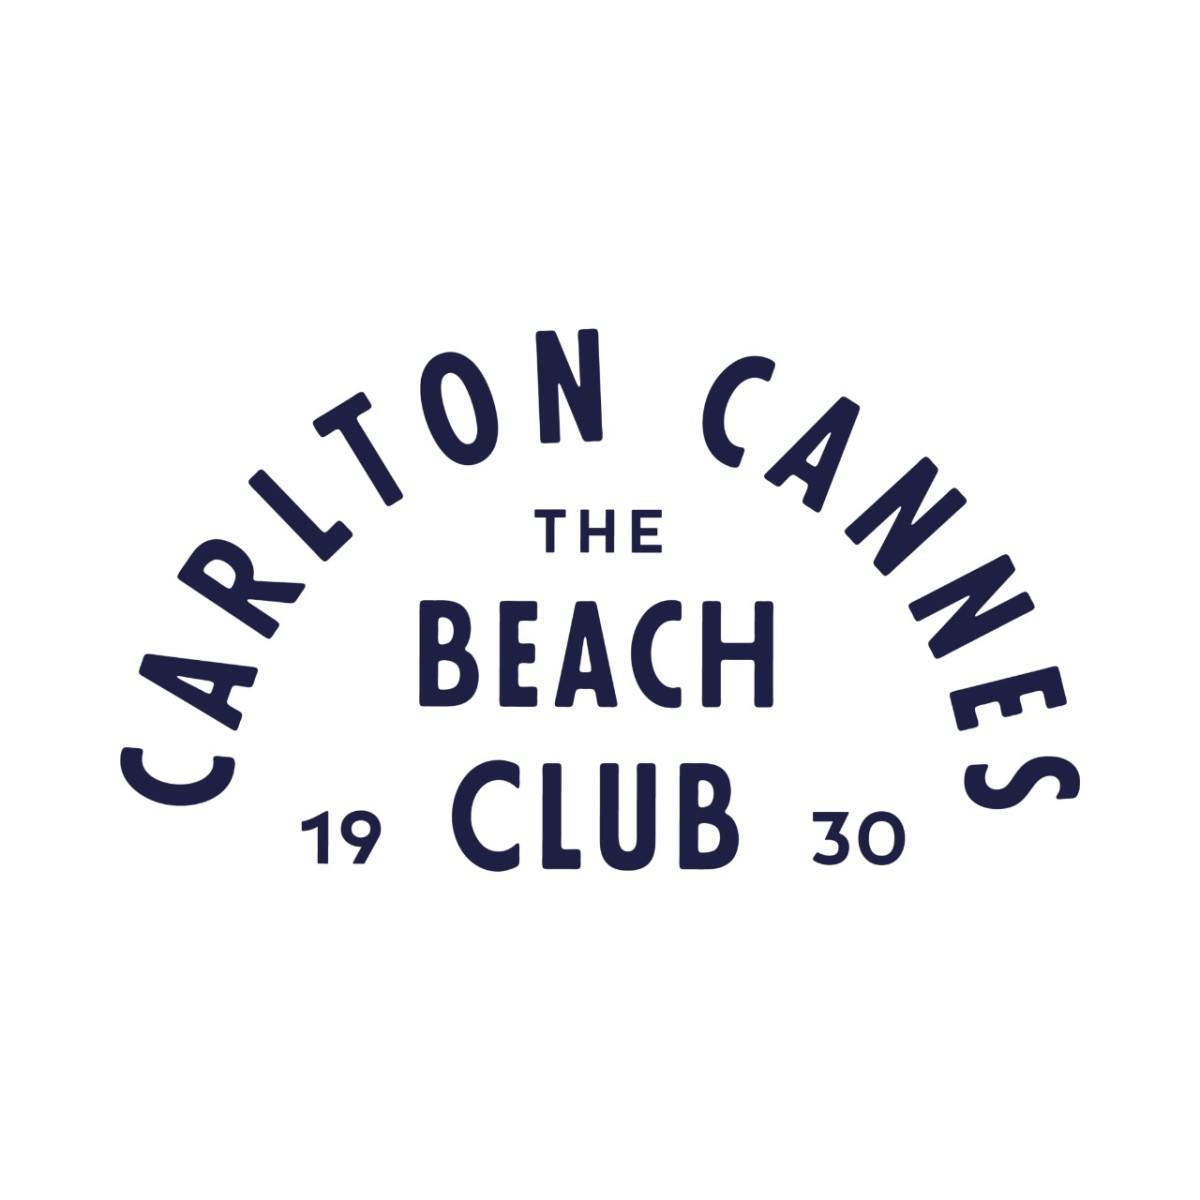 Carlton Beach Club